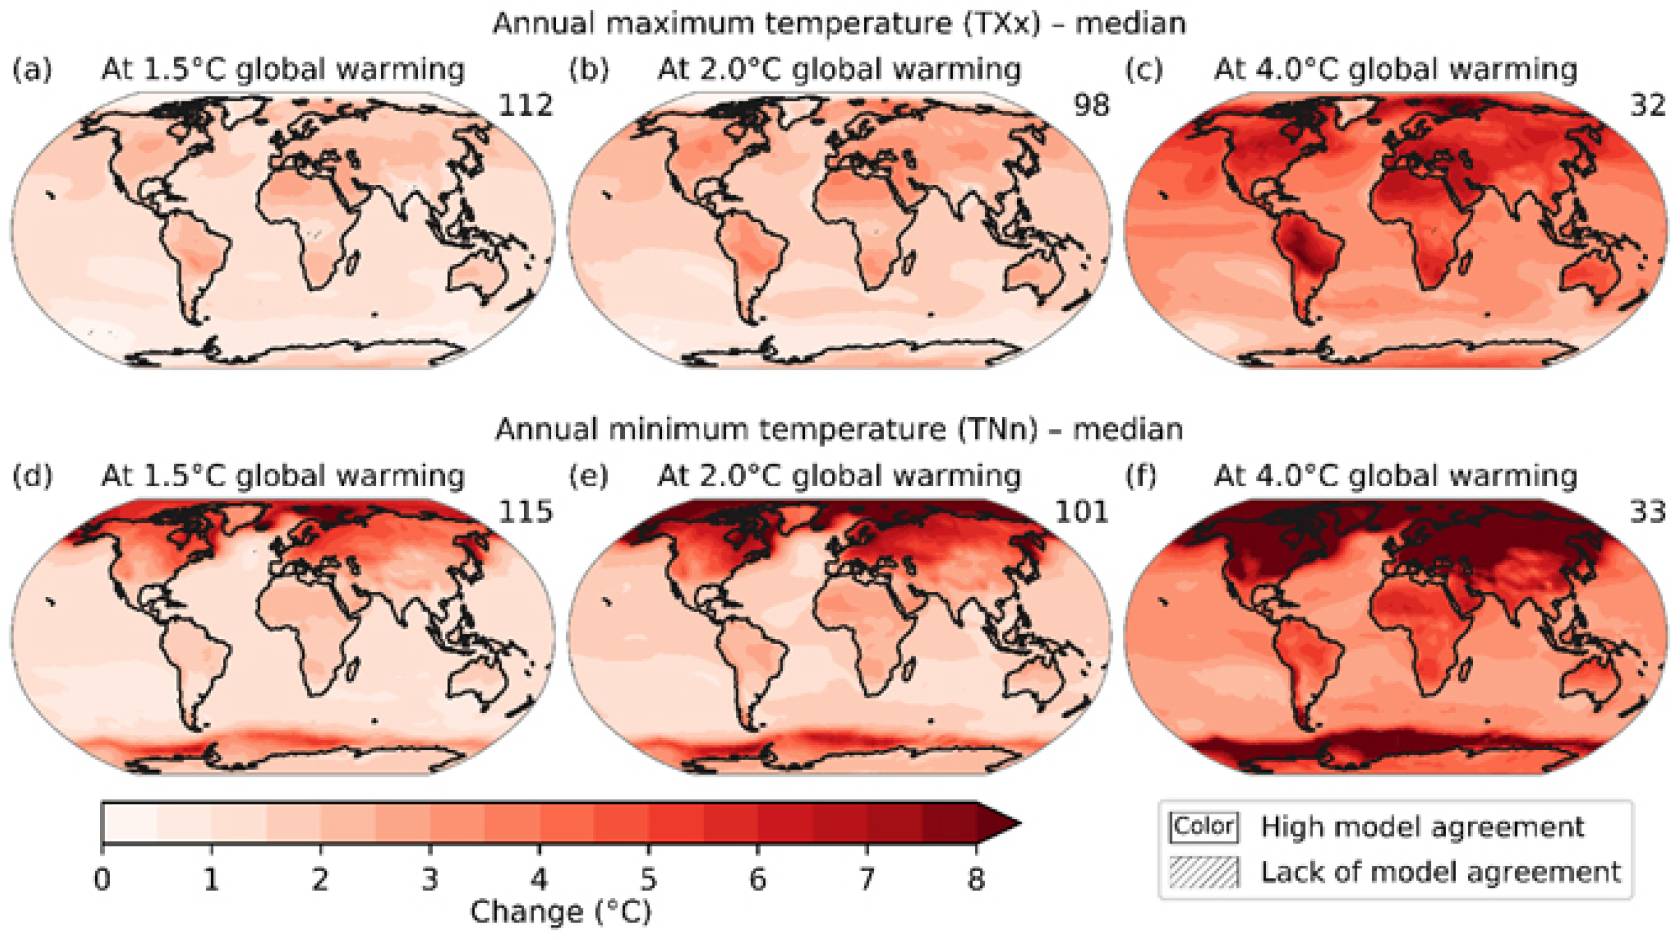 Comparison of temperatures around the globe